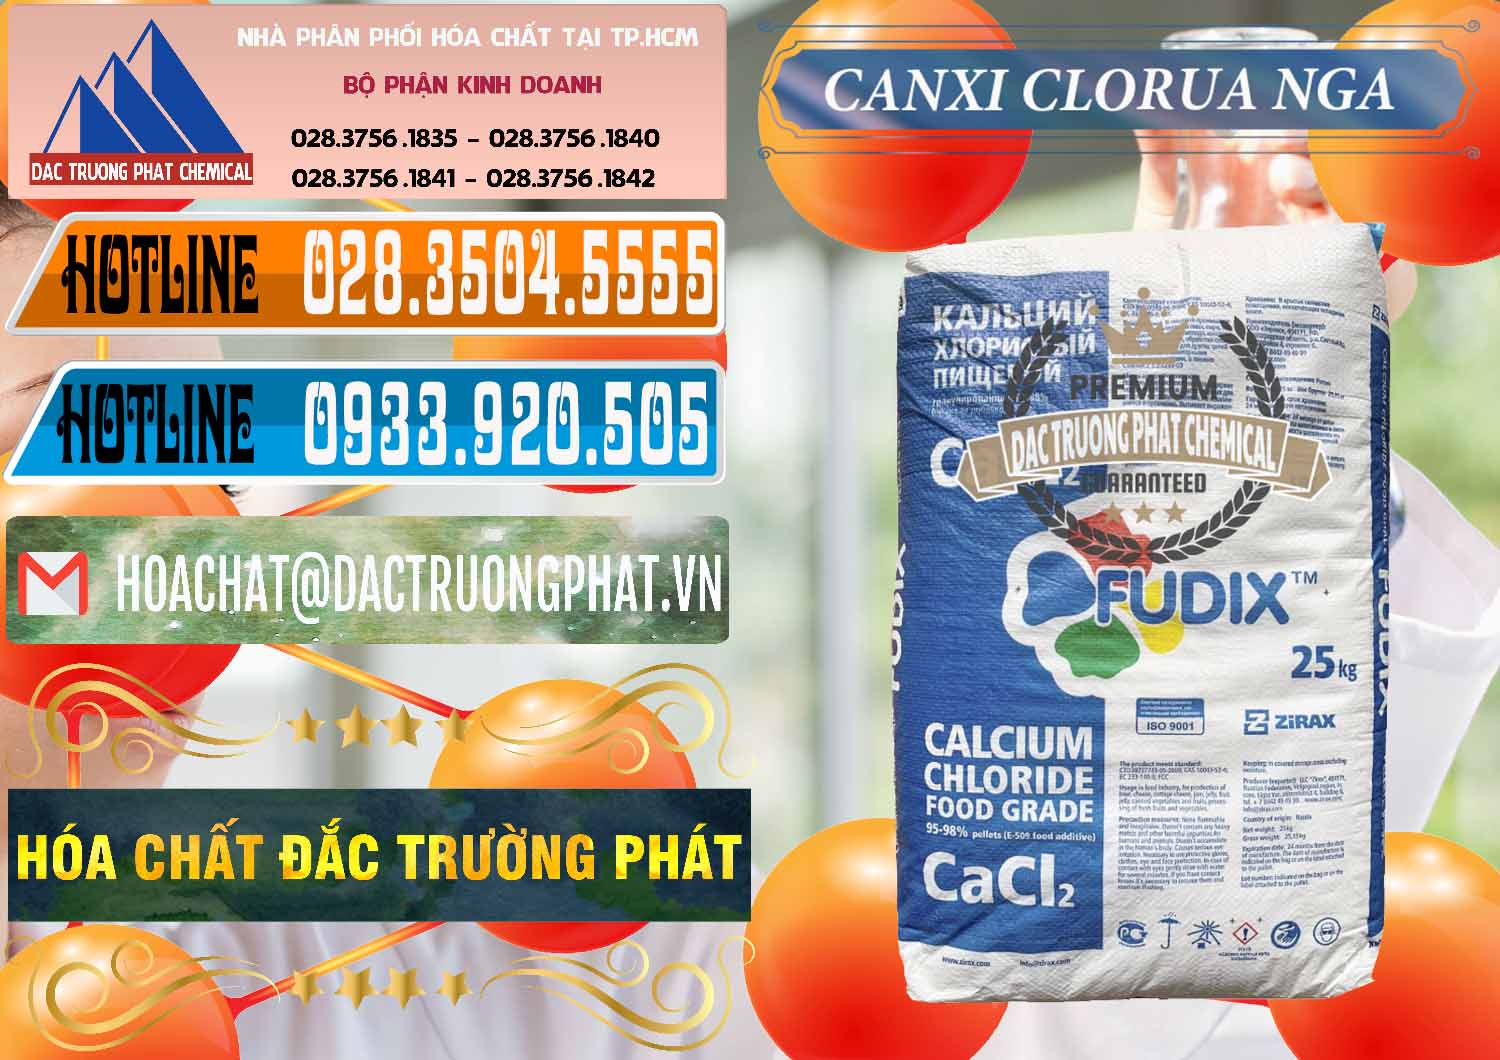 Nơi kinh doanh và bán CaCl2 – Canxi Clorua Nga Russia - 0430 - Công ty chuyên cung cấp - kinh doanh hóa chất tại TP.HCM - stmp.net